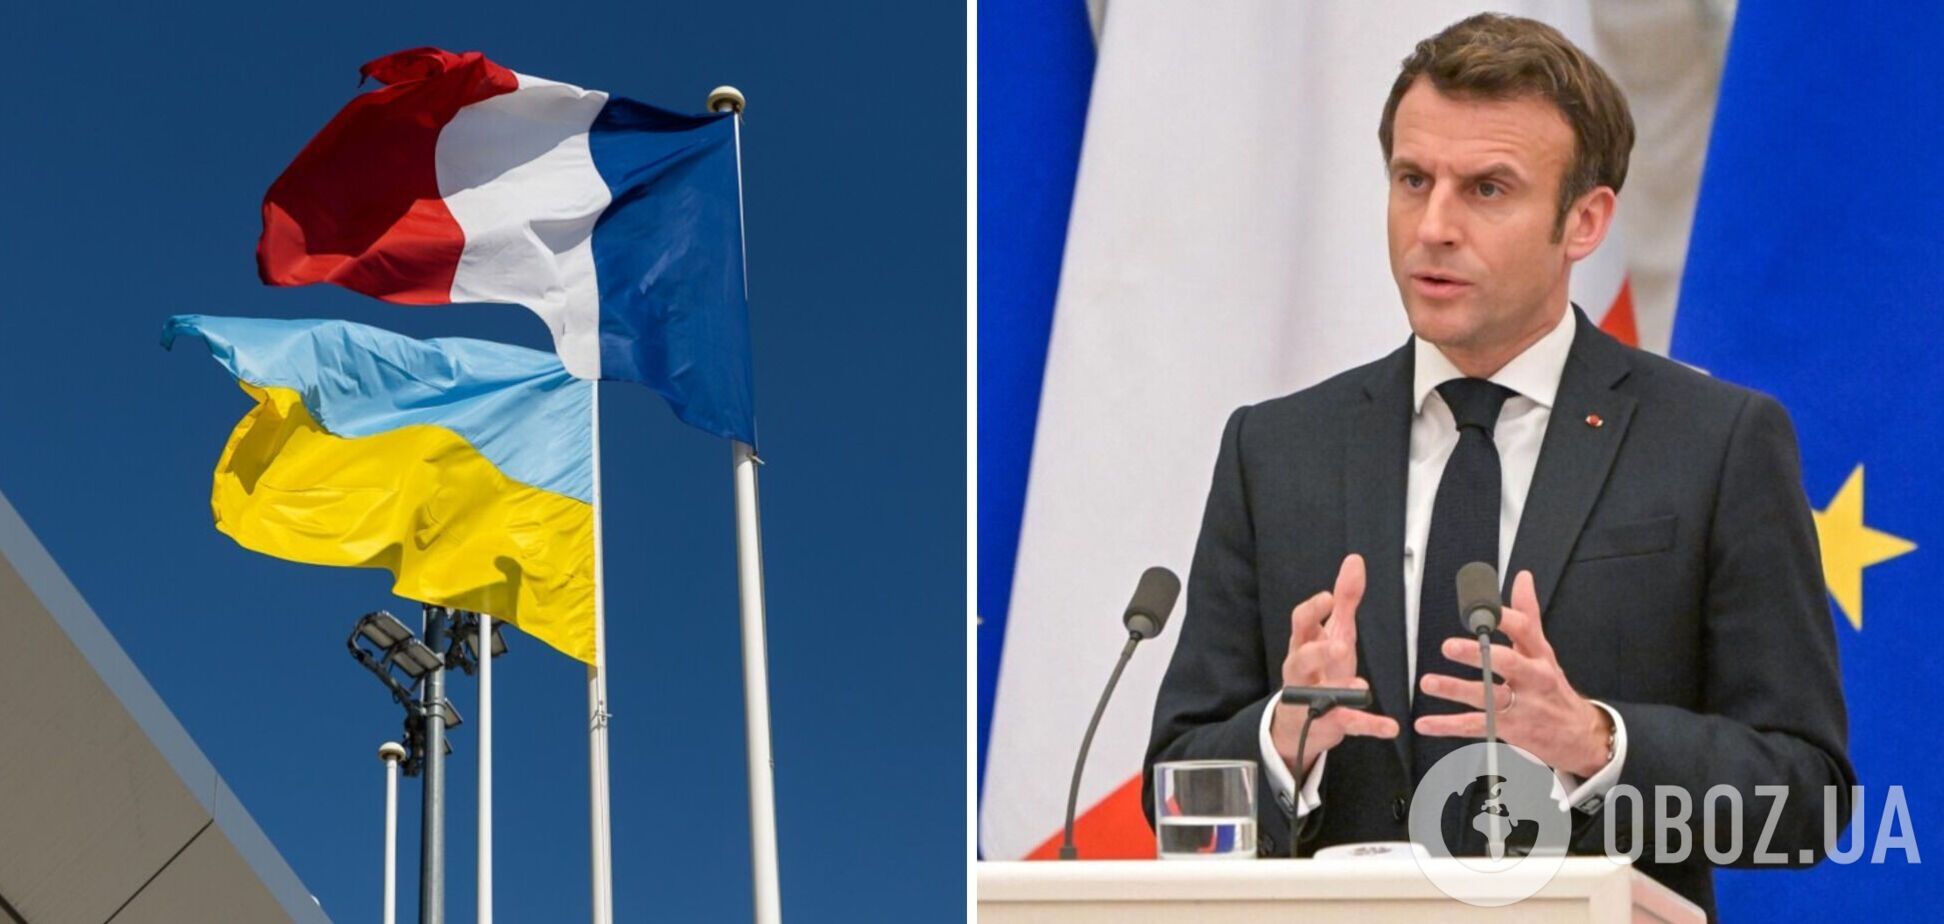 Макрон в феврале посетит Киев и подпишет двустороннее соглашение о безопасности с Украиной 